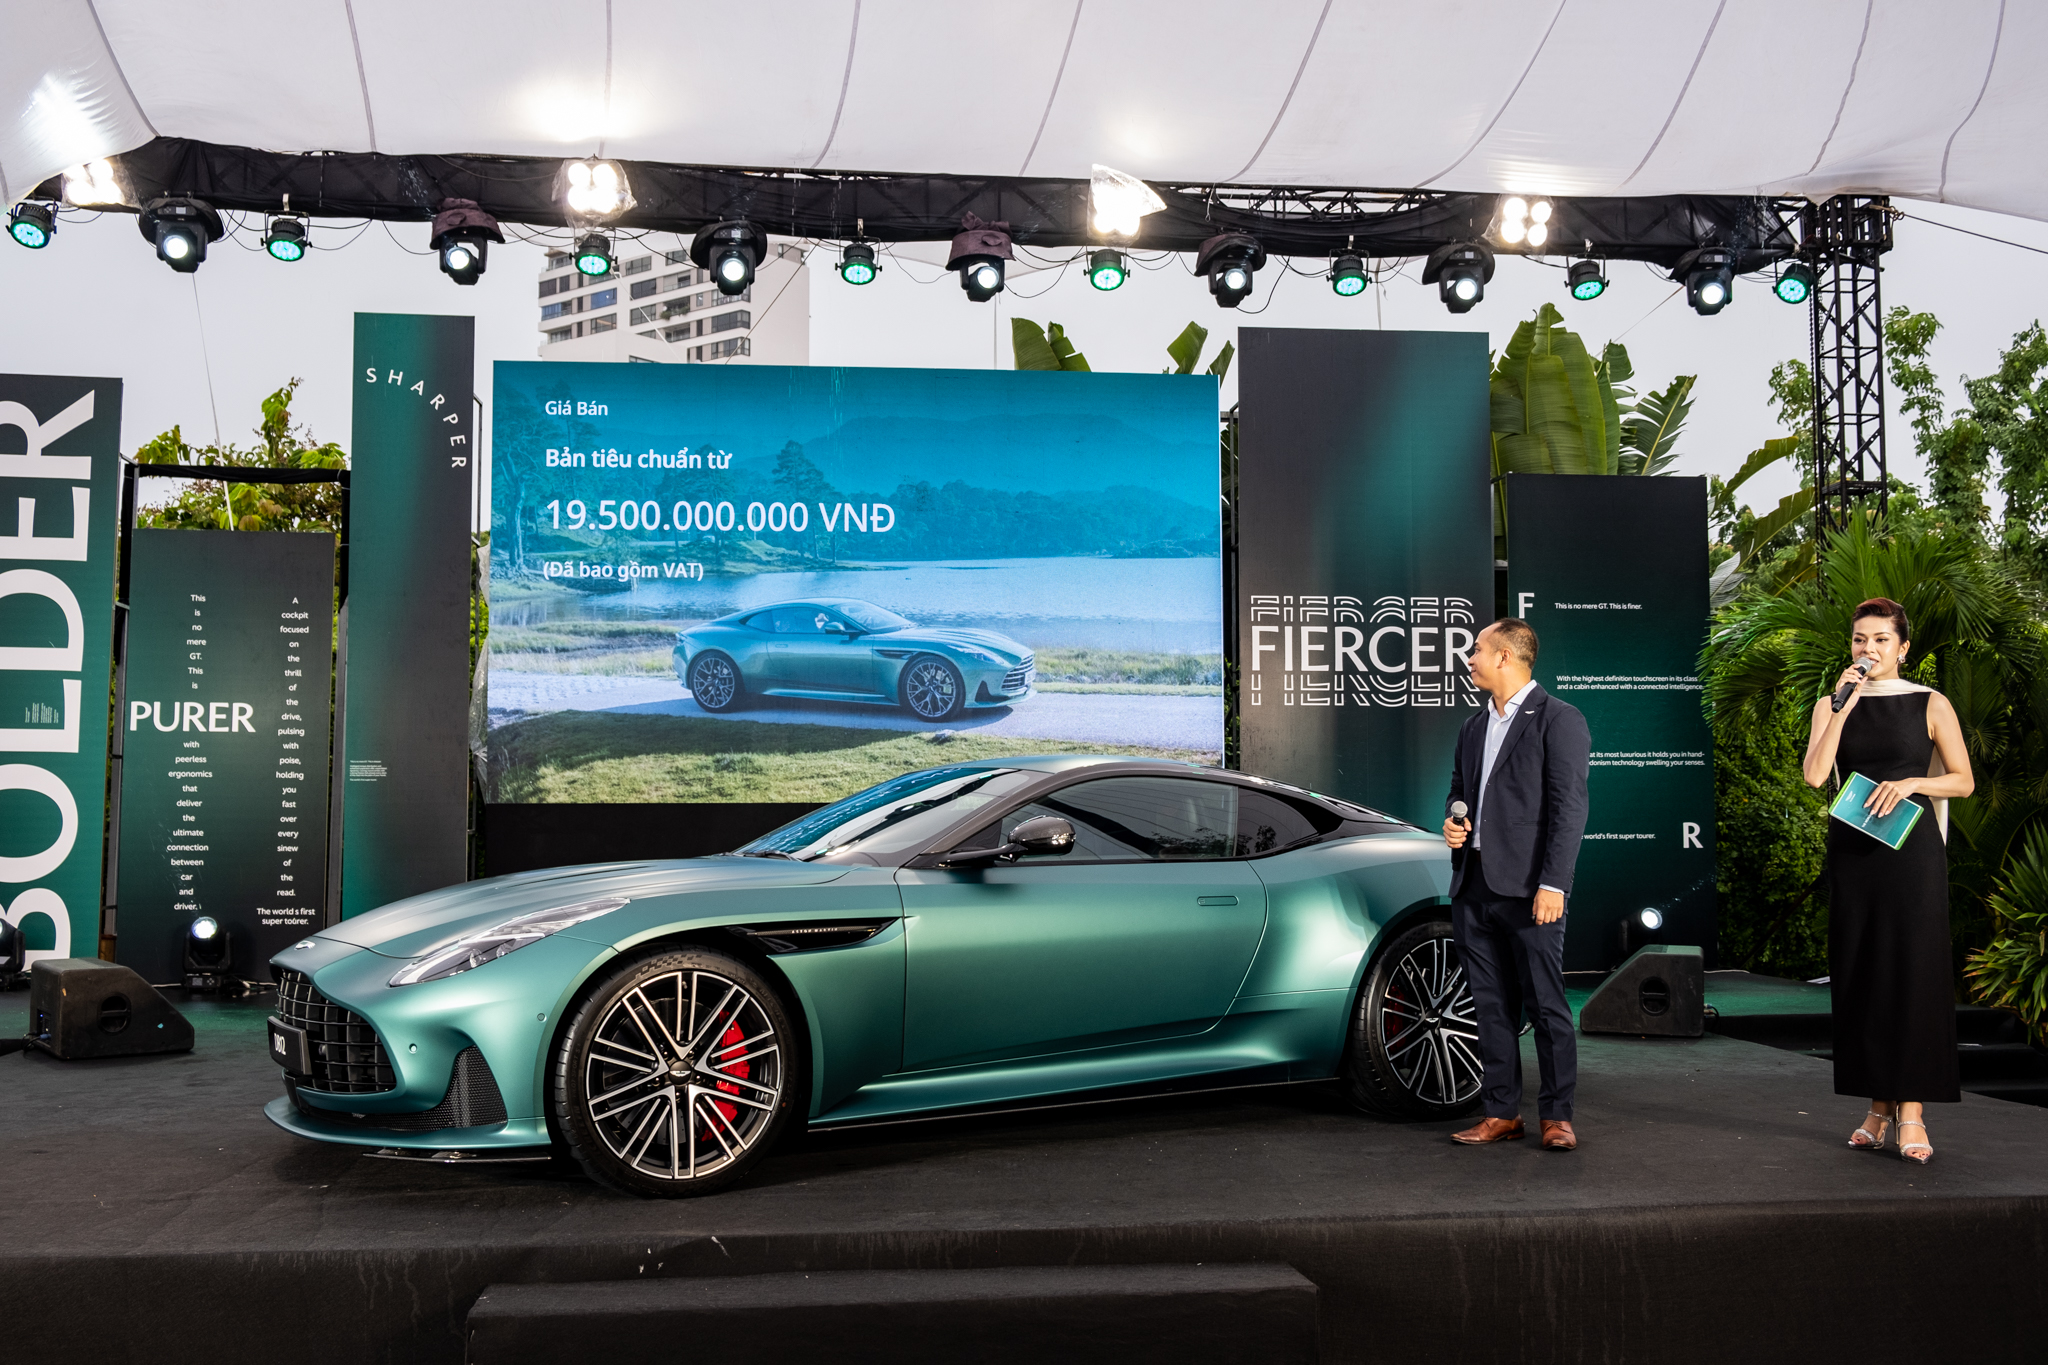 Aston Martin DB12 ra mắt Việt Nam: Giá từ 19,5 tỷ, đại gia thích mui trần hay option riêng vẫn đặt được nhưng cần chờ đợi- Ảnh 2.